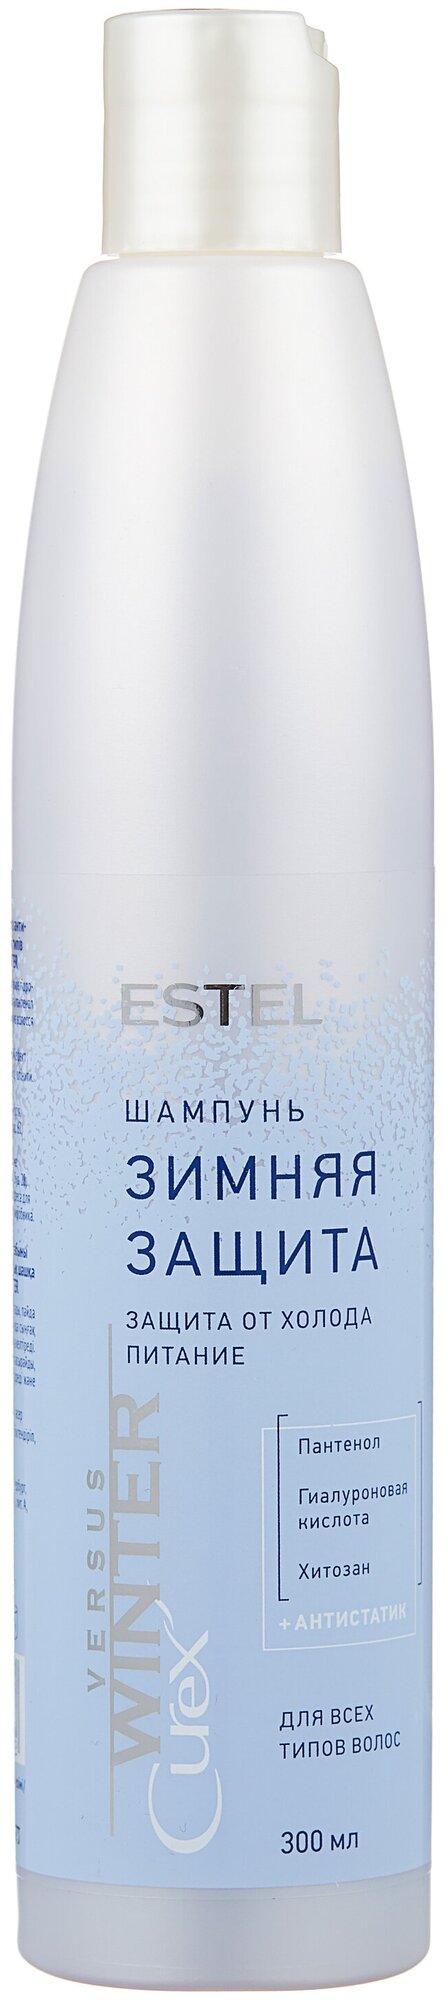 Estel Шампунь для волос Защита и питание, 300 мл (Estel, ) - фото №1